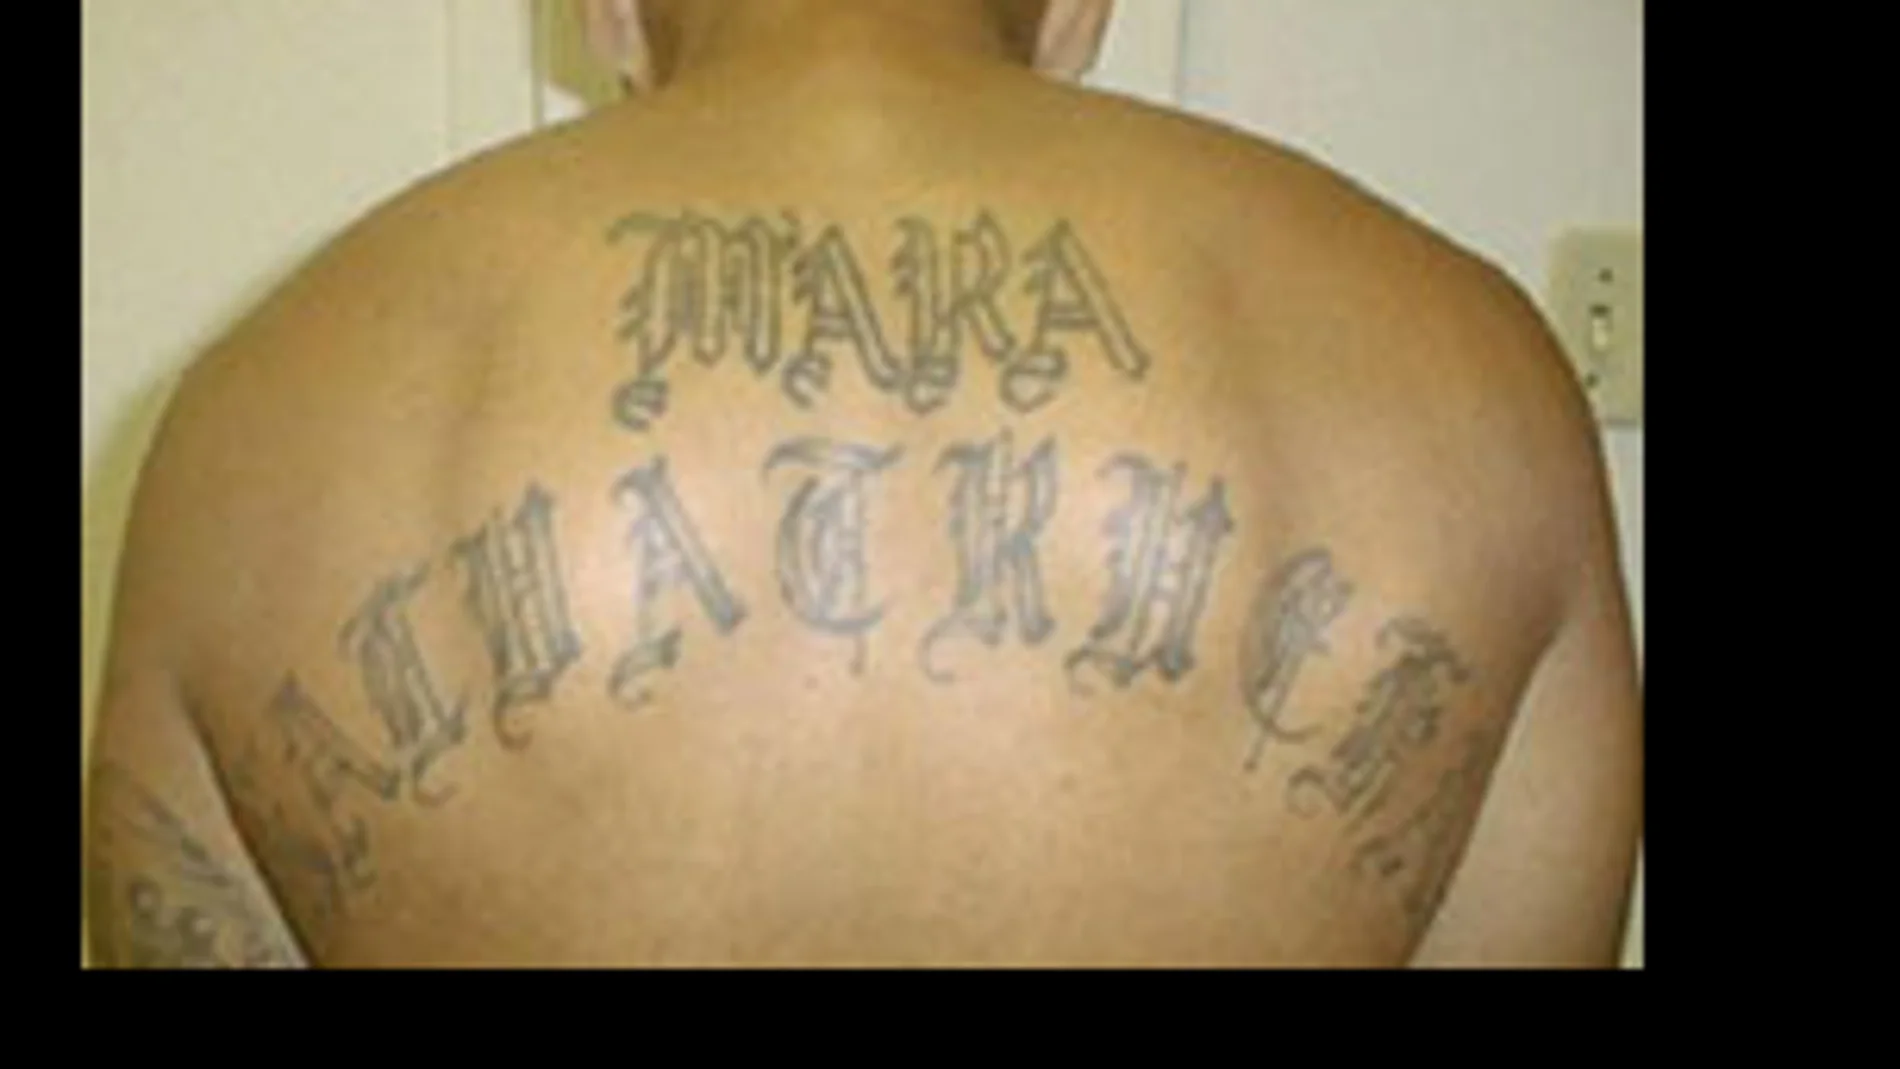 Miembro de la Mara Salvatrucha detenido por la DEA